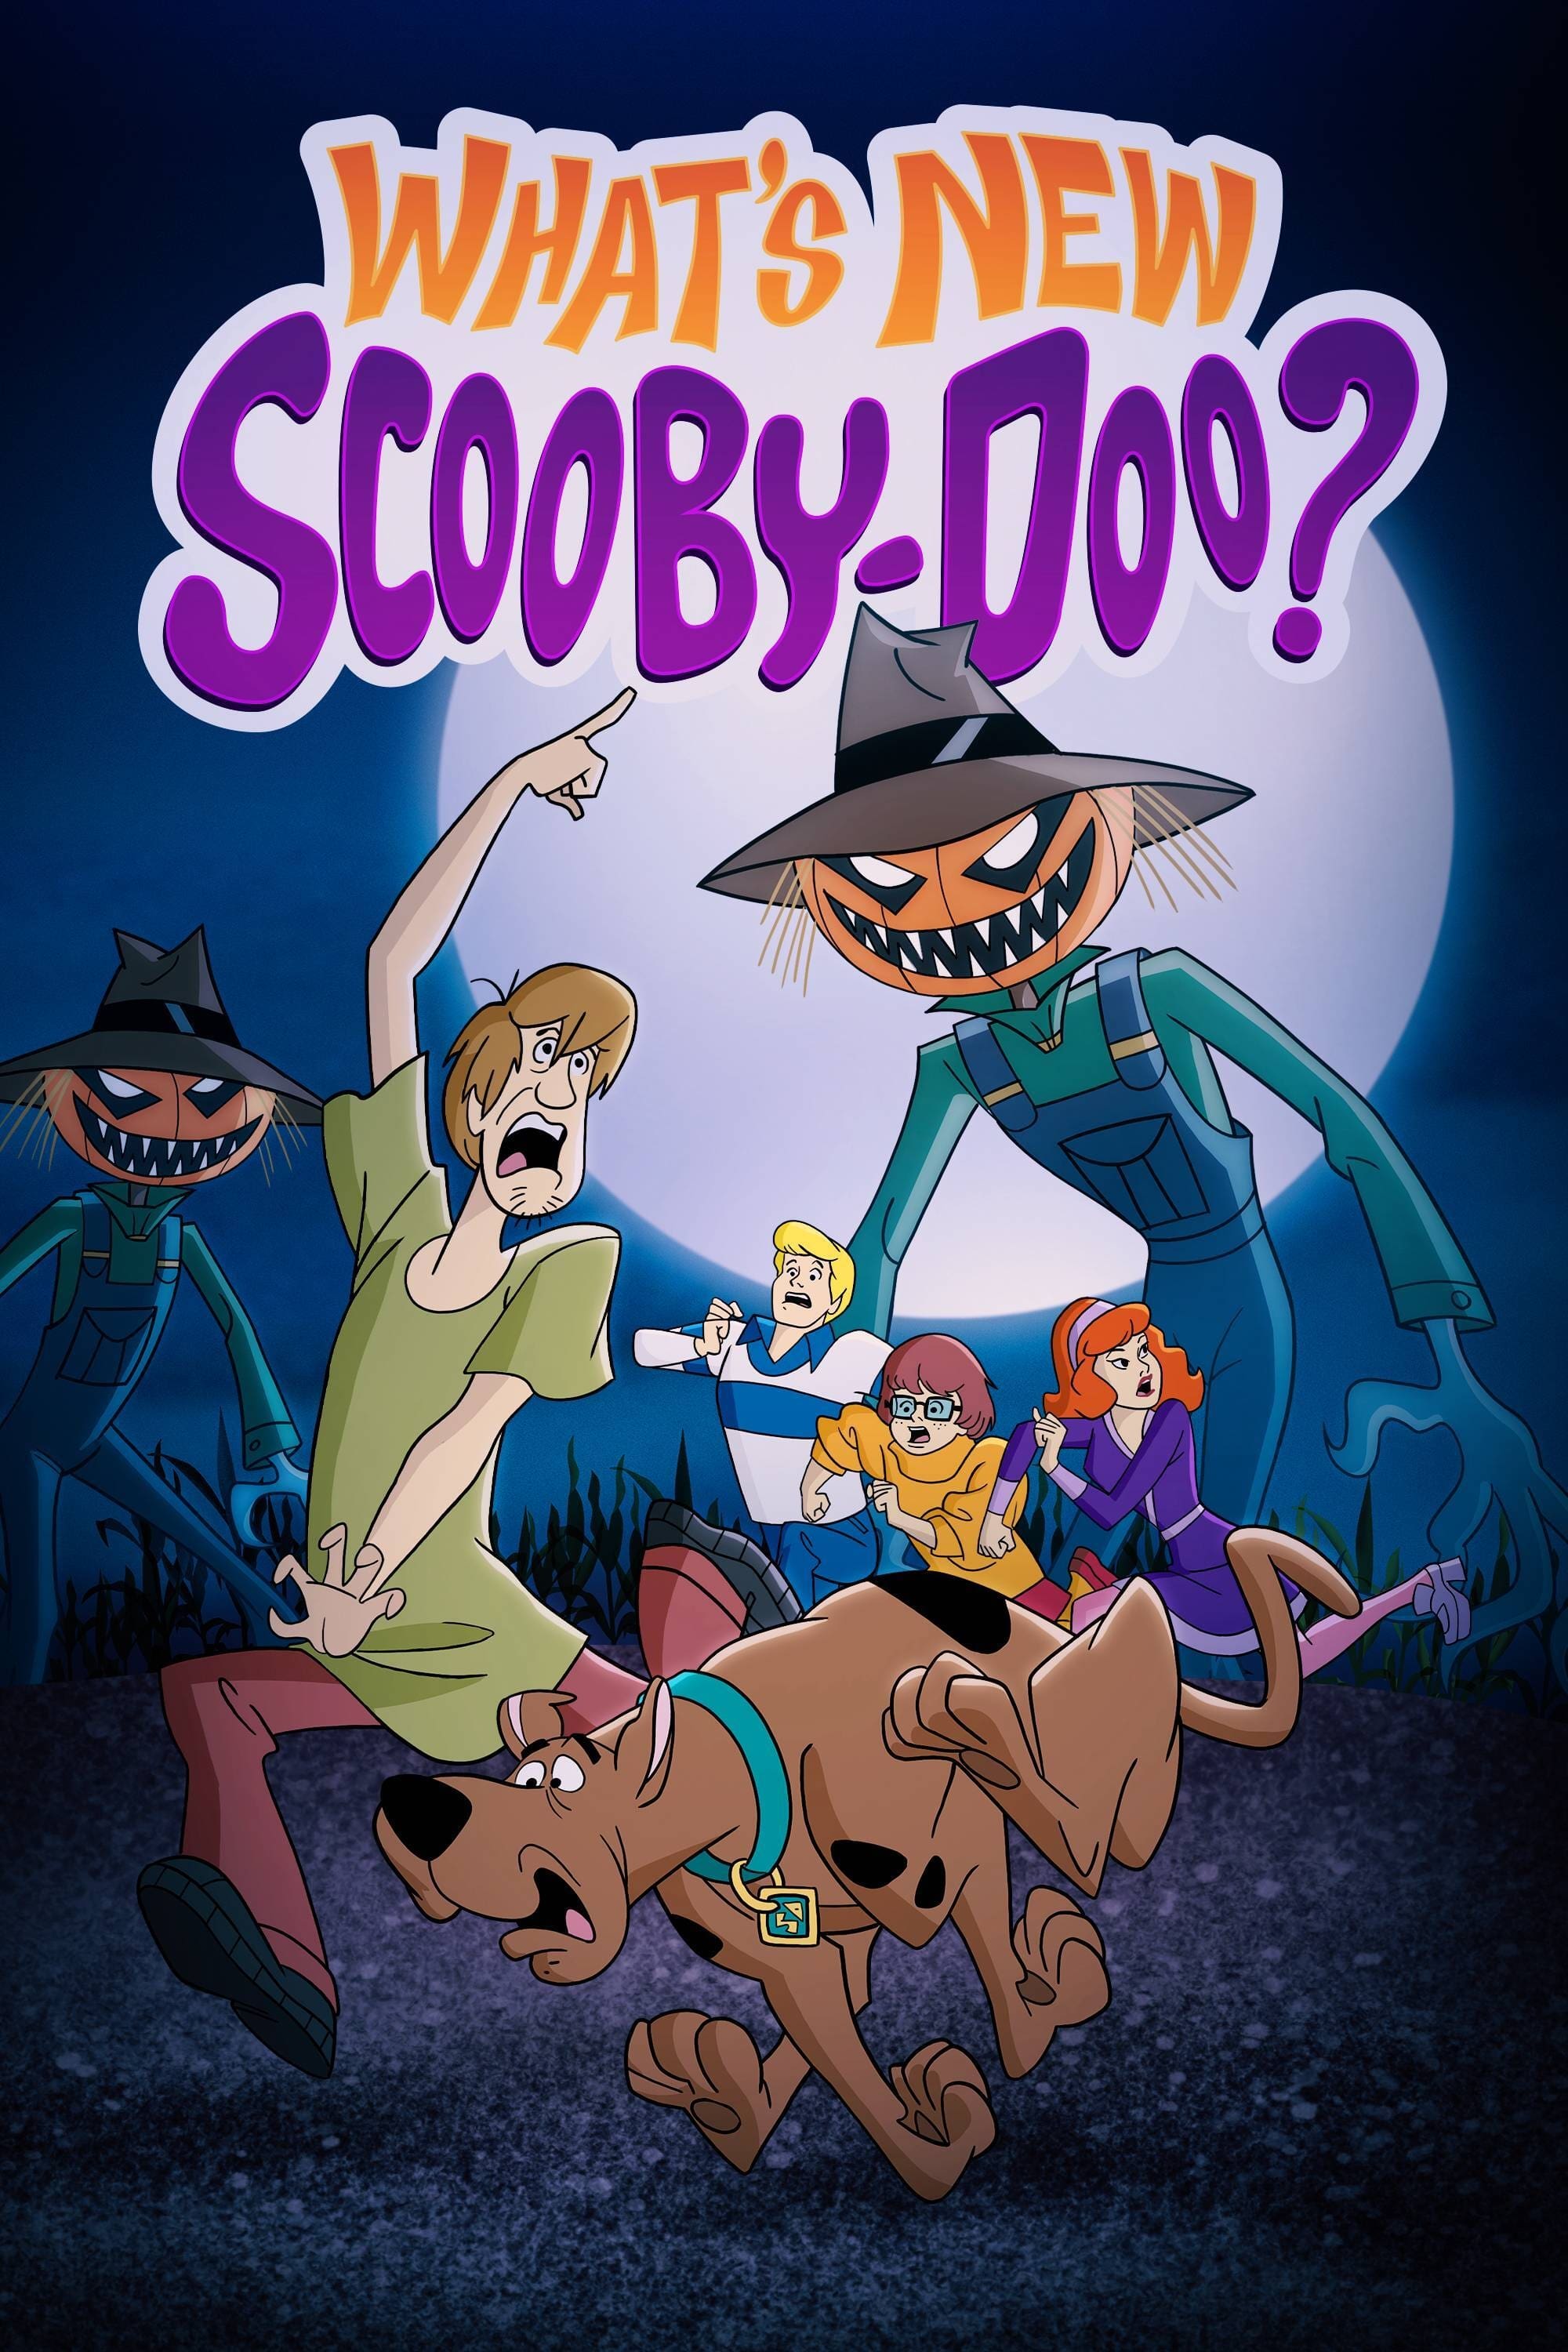 O Que Há de Novo, Scooby-Doo?